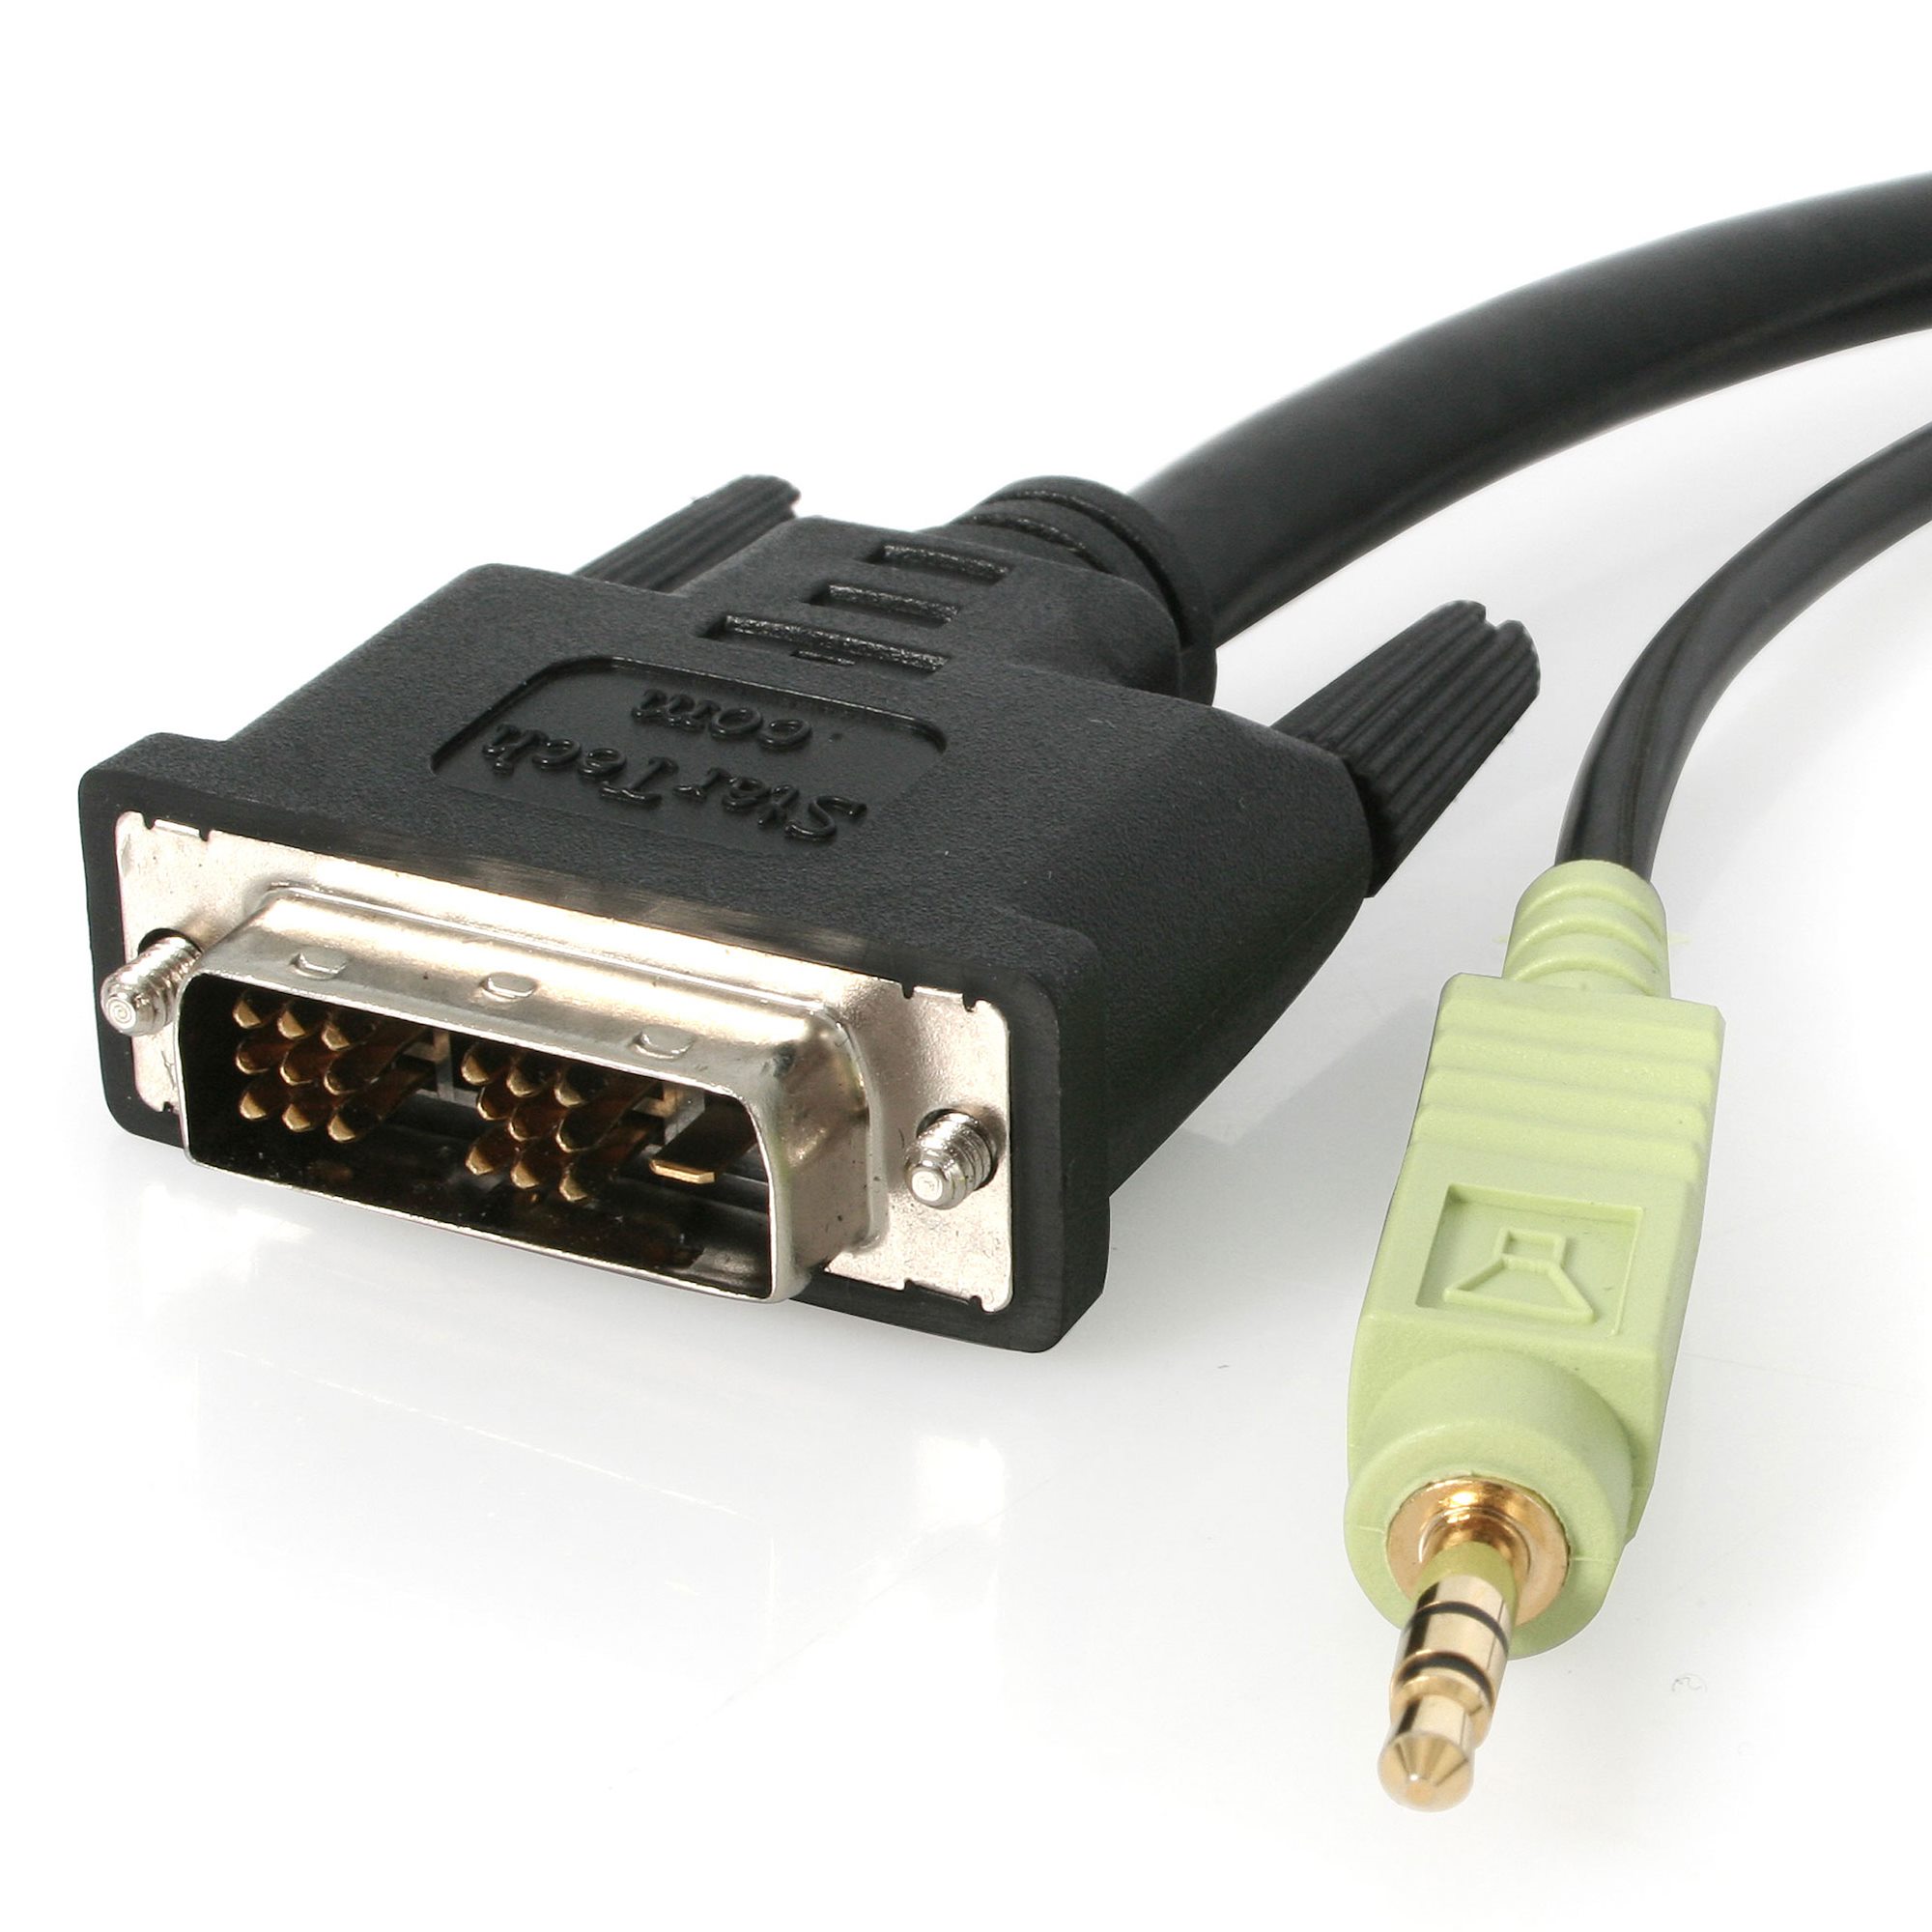 Звук через vga. Кабель HDMI DVI Jack 3.5. Переходник HDMI - DVI-D - Jack 3.5. DVI HDMI переходник со звуком. Дви переходник на HDMI С Джеком 3,5.